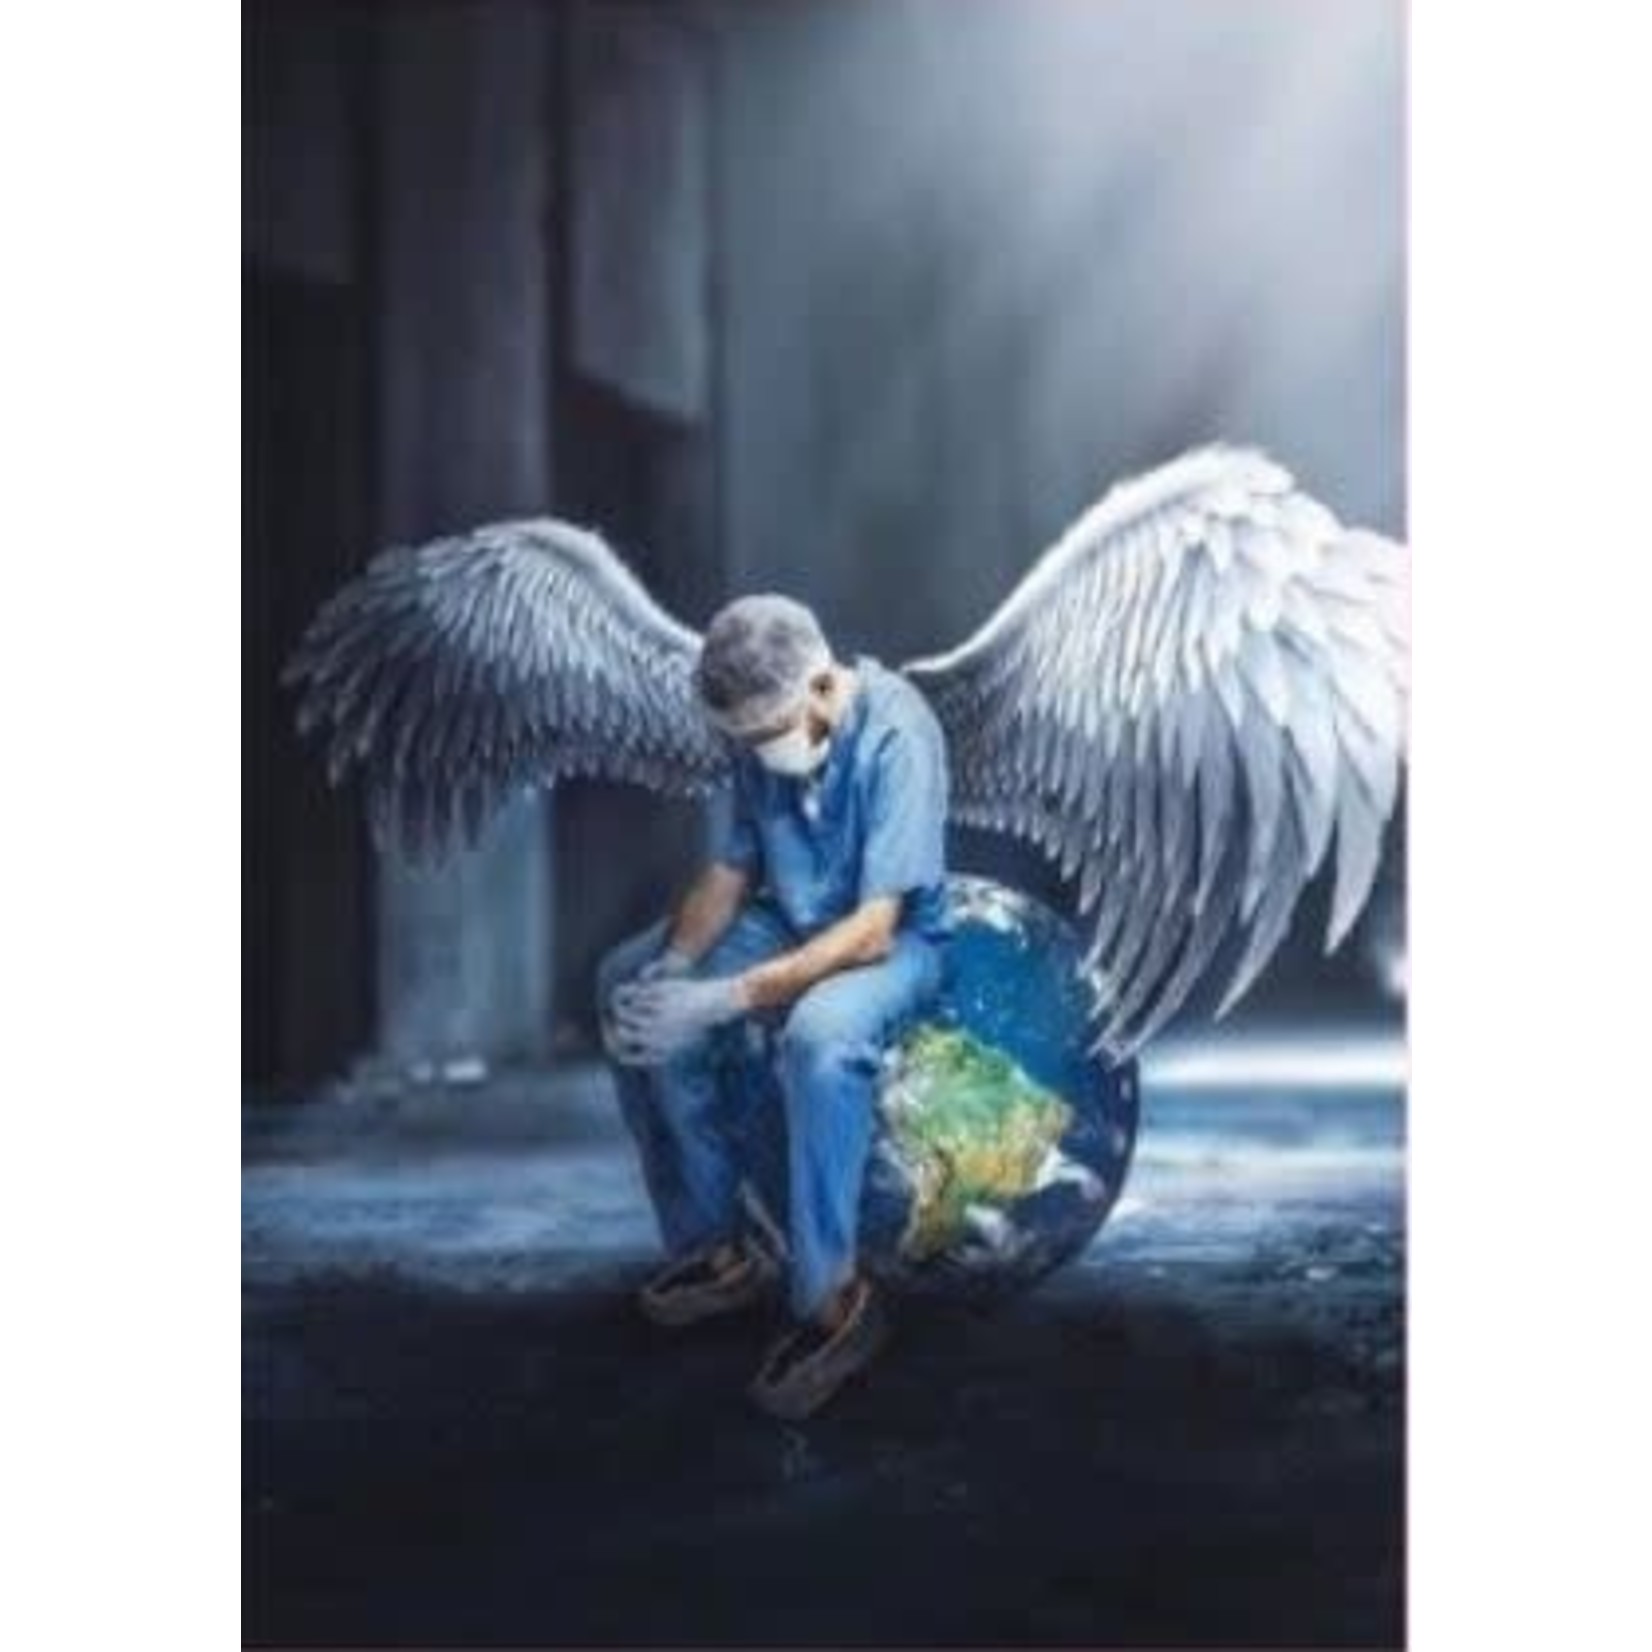 Engel voor de verzorgenden